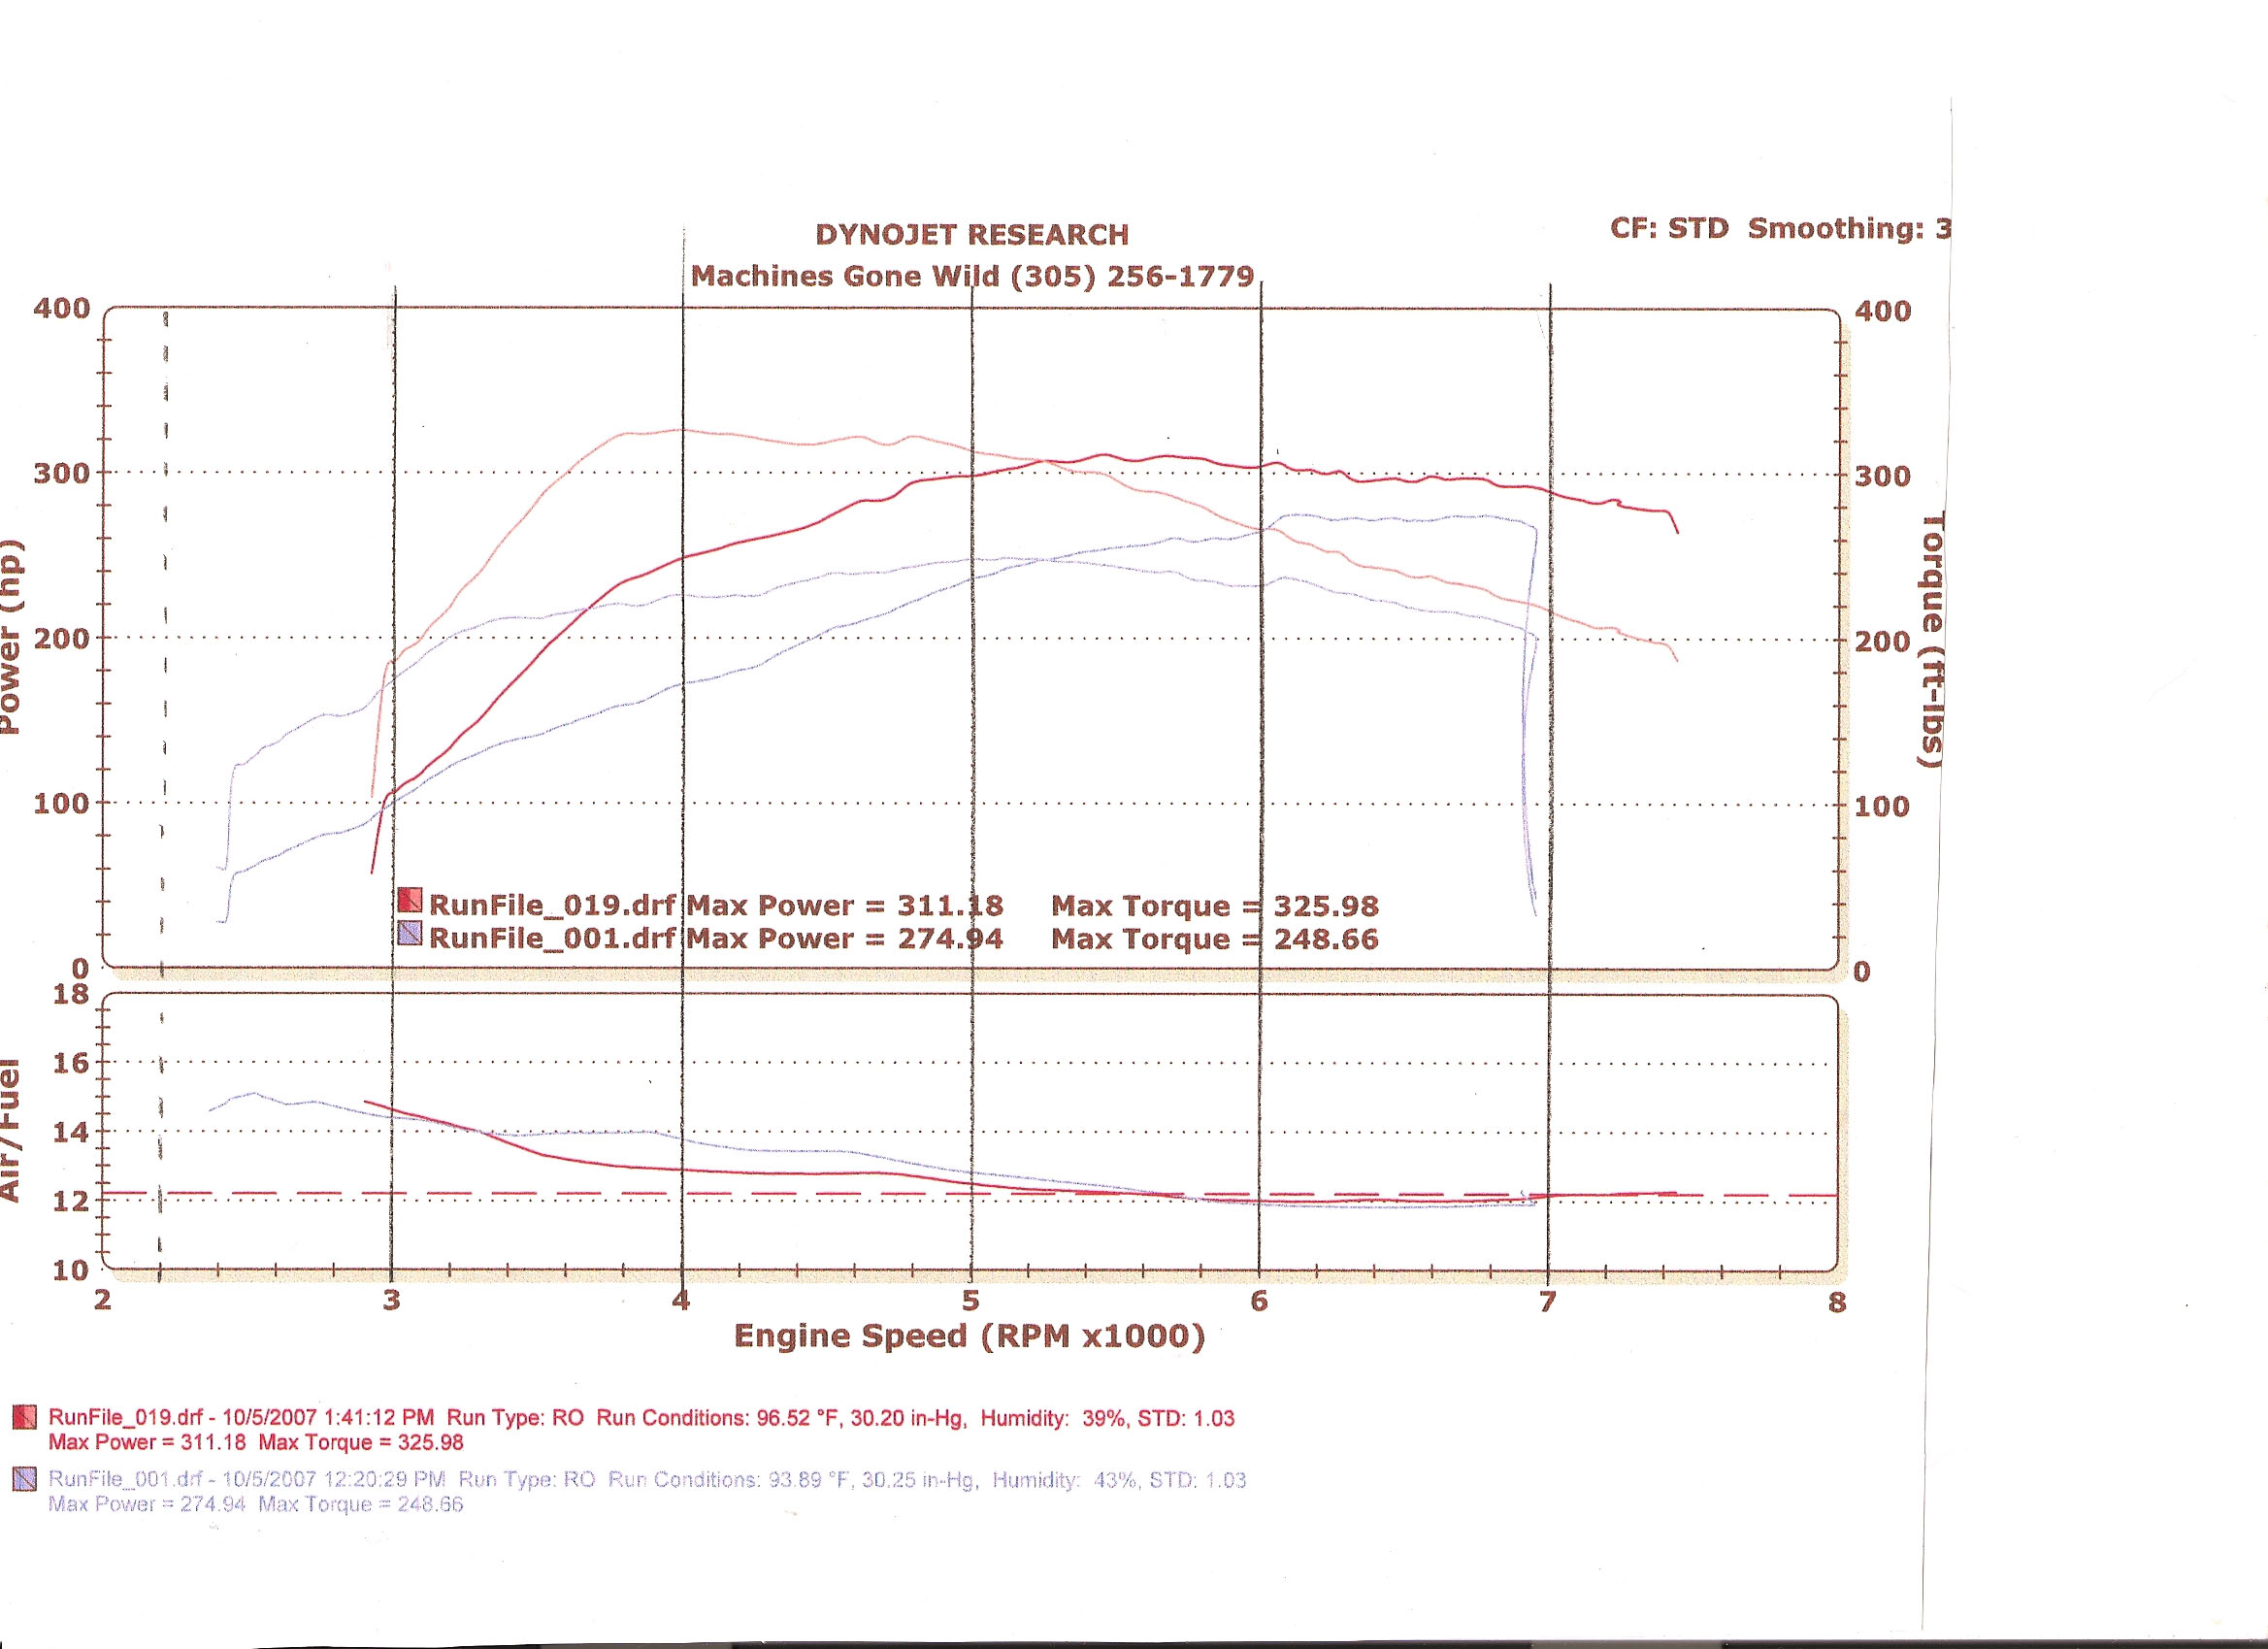 Subaru Impreza Dyno Graph Results